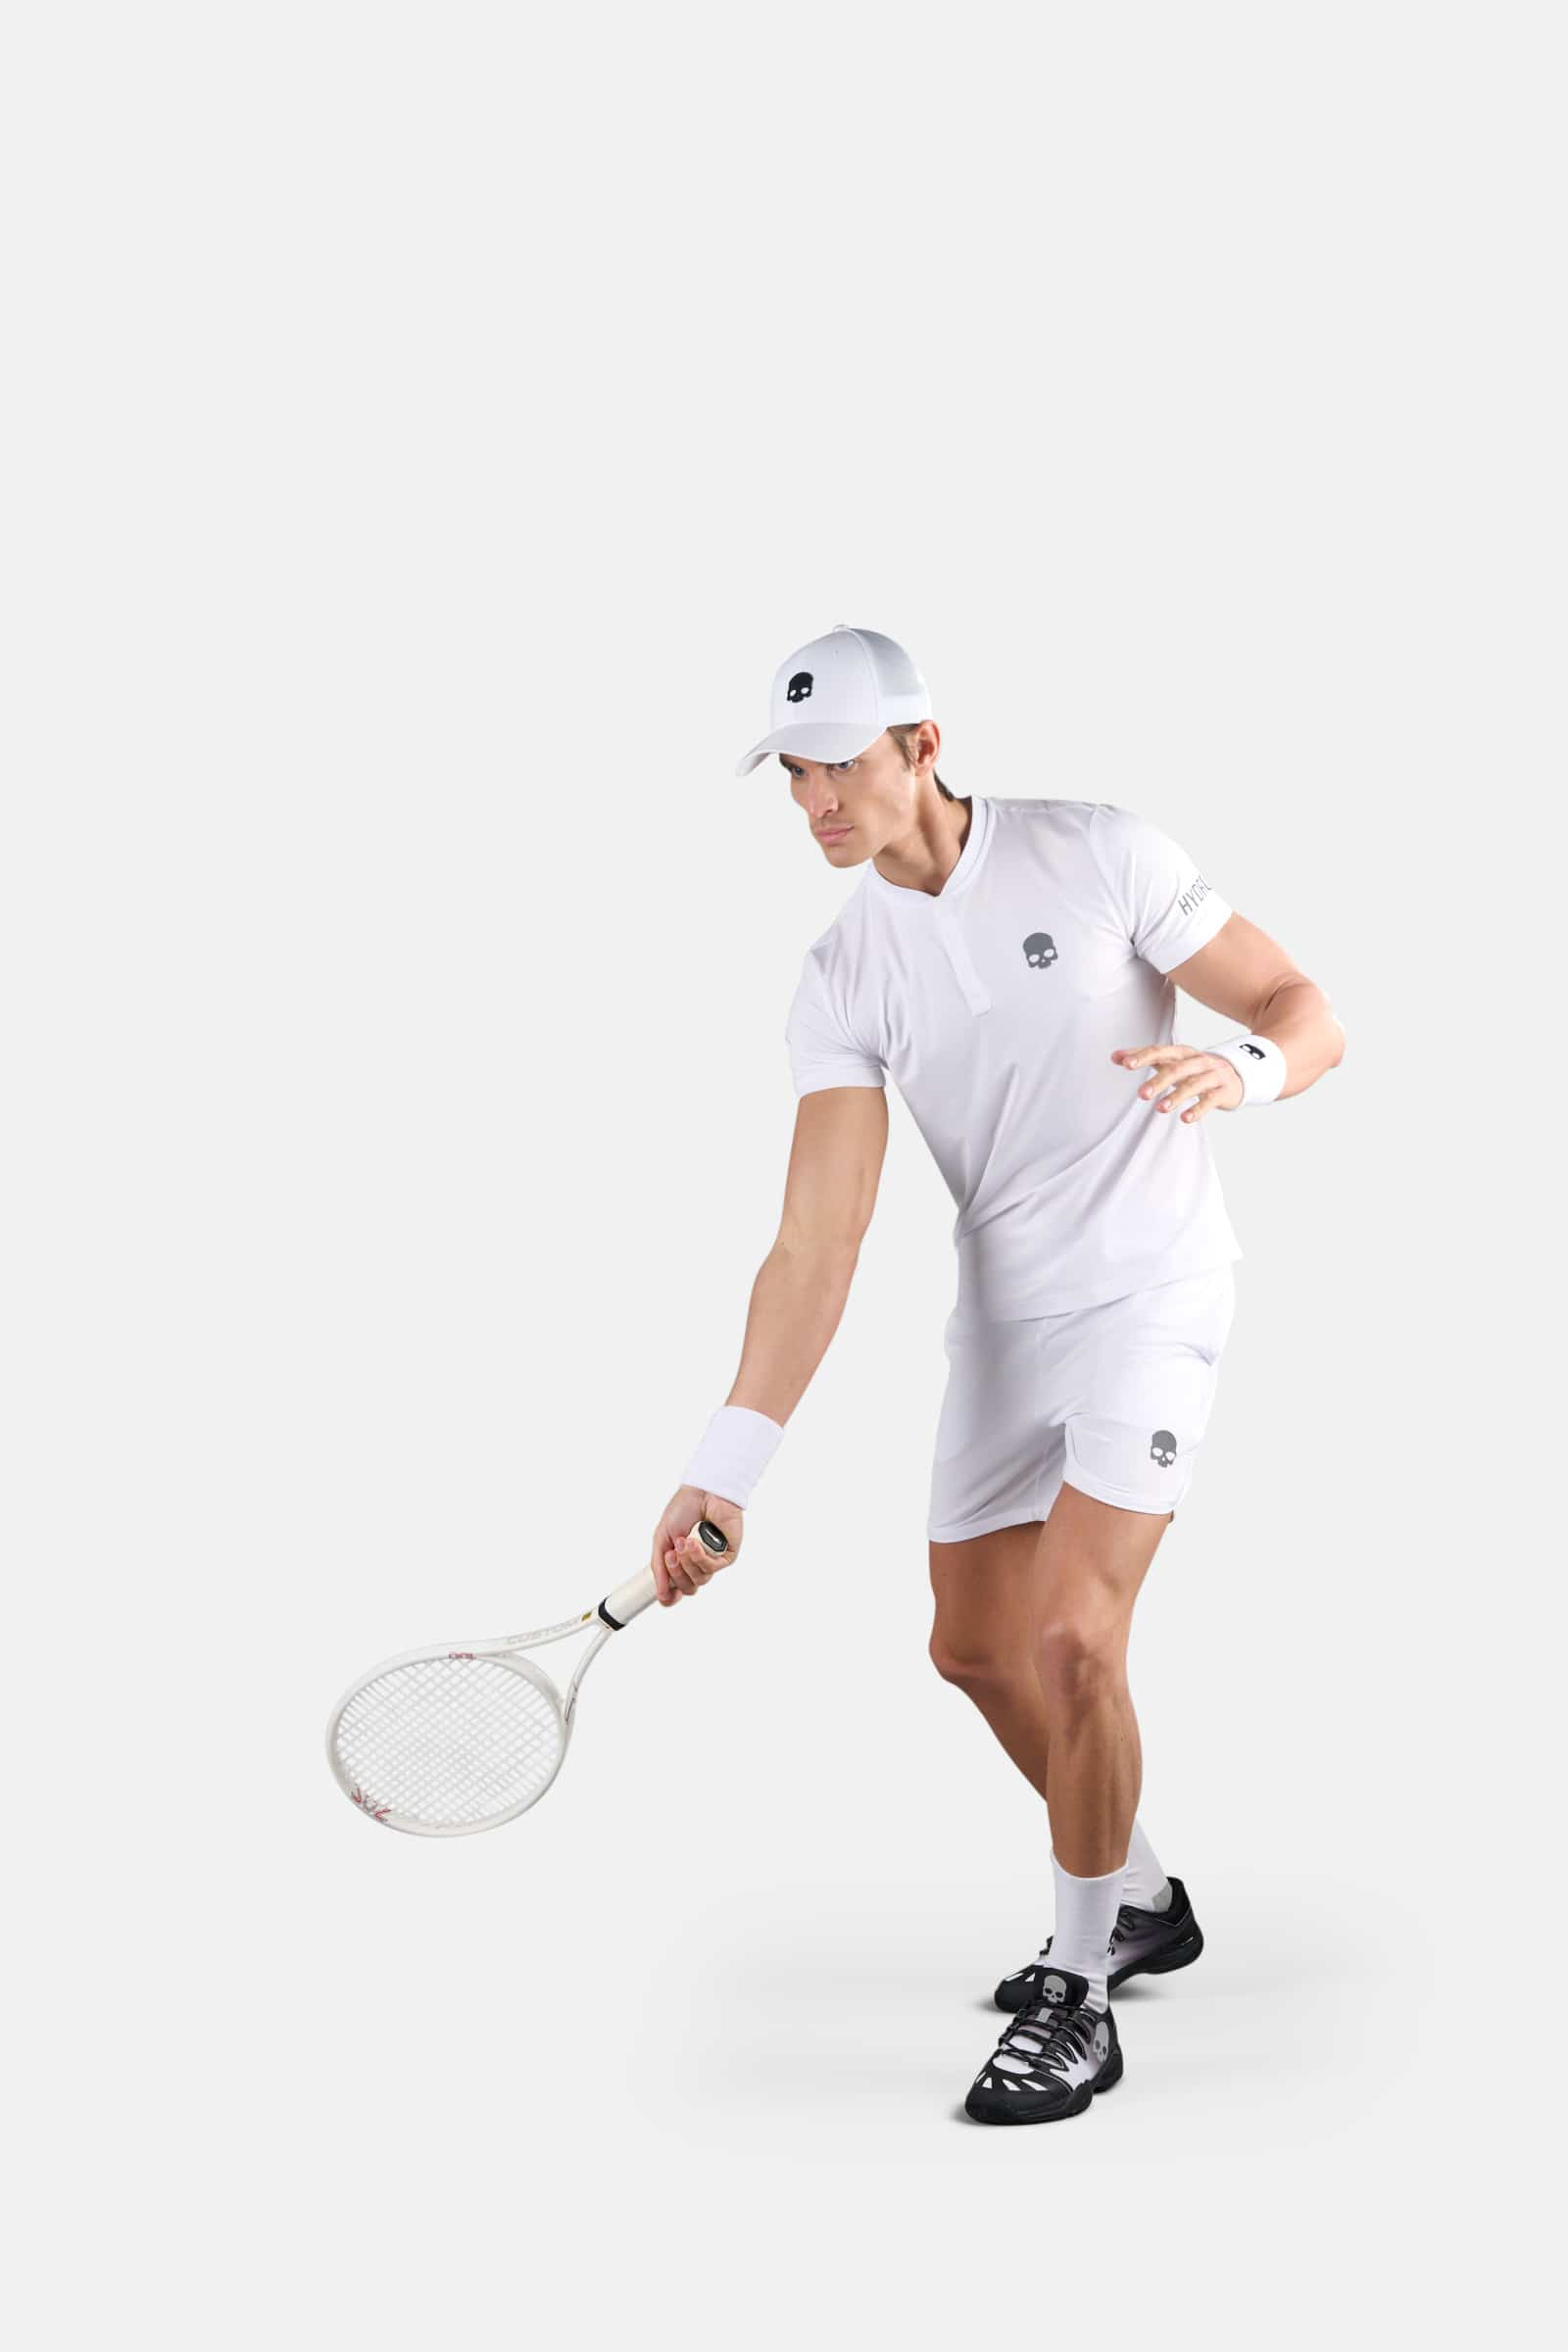 TECH SERAFINO - WHITE - Abbigliamento sportivo | Hydrogen